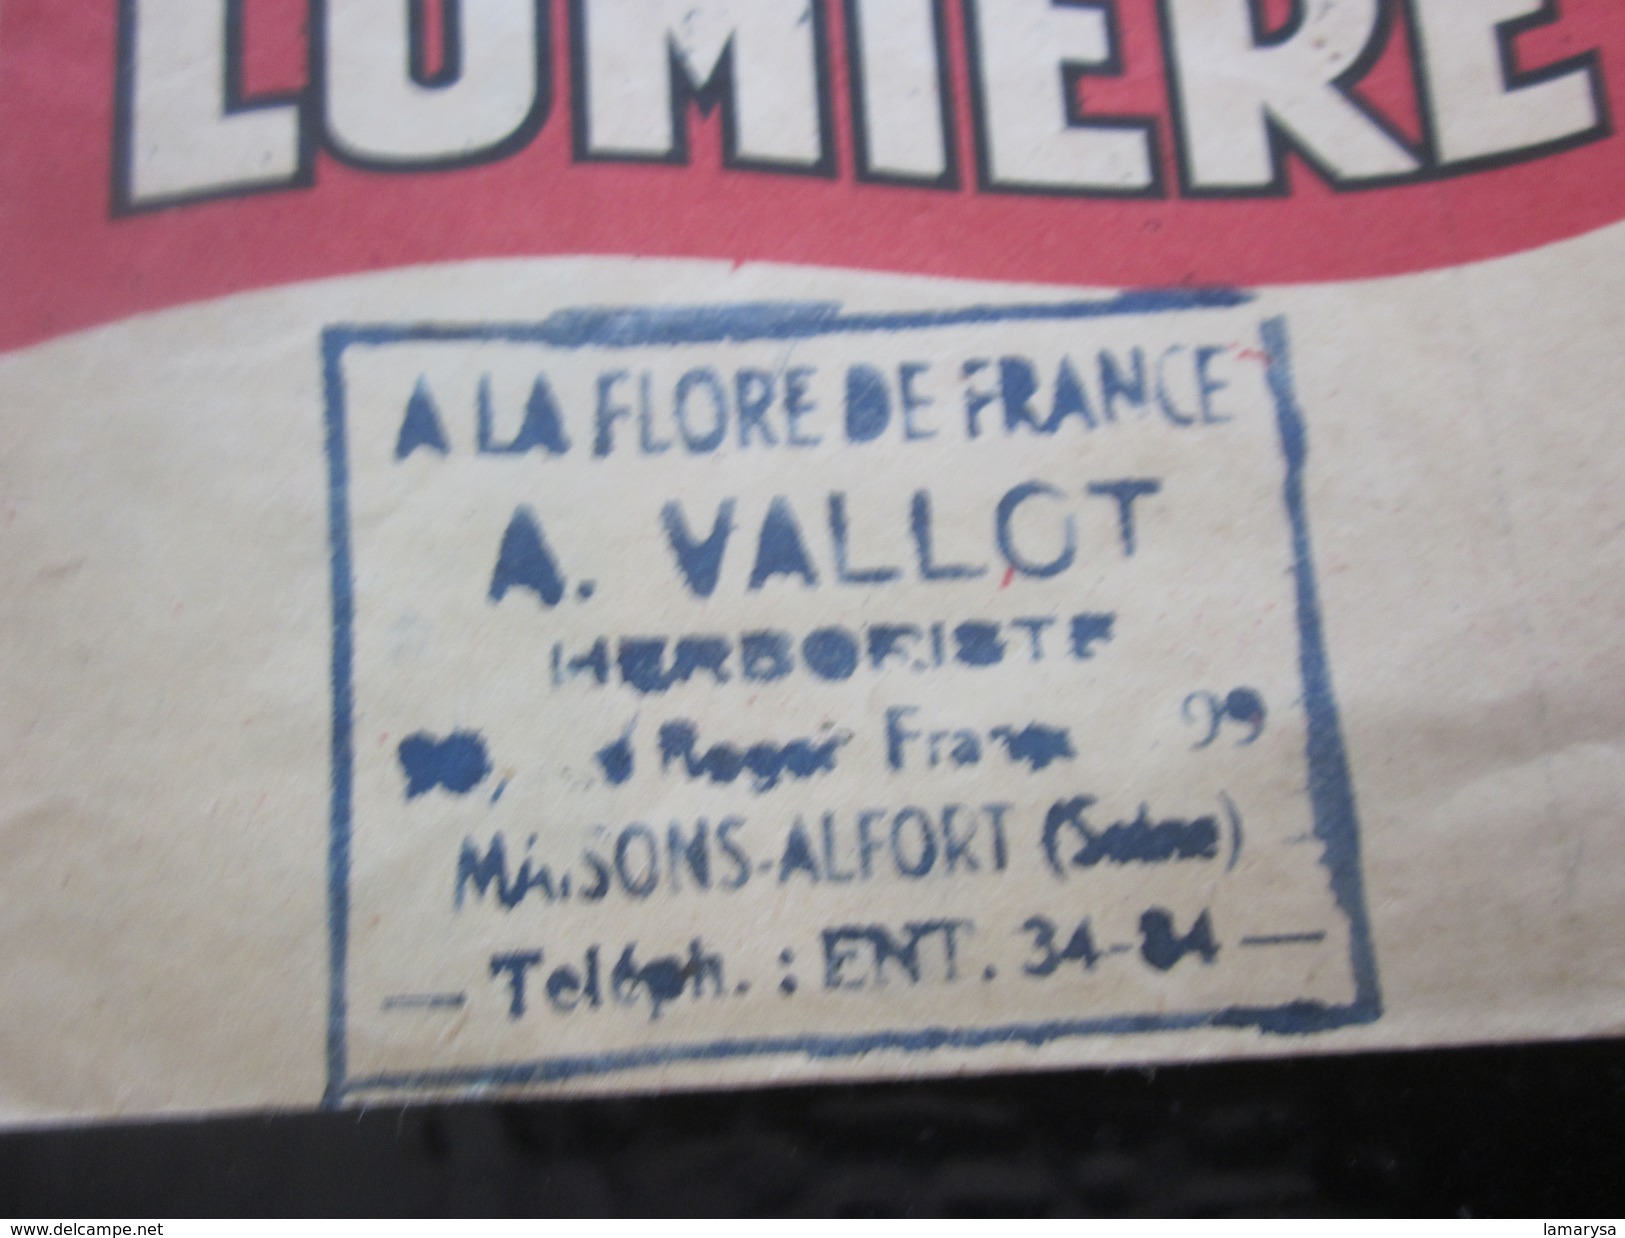 Photographie-1931 Ancienne Pochette Lumichrome "LUMIÈRE" Illustrée  (vide)Pour Photos Vallot Herb Maison-Alfort Matériel - Matériel & Accessoires